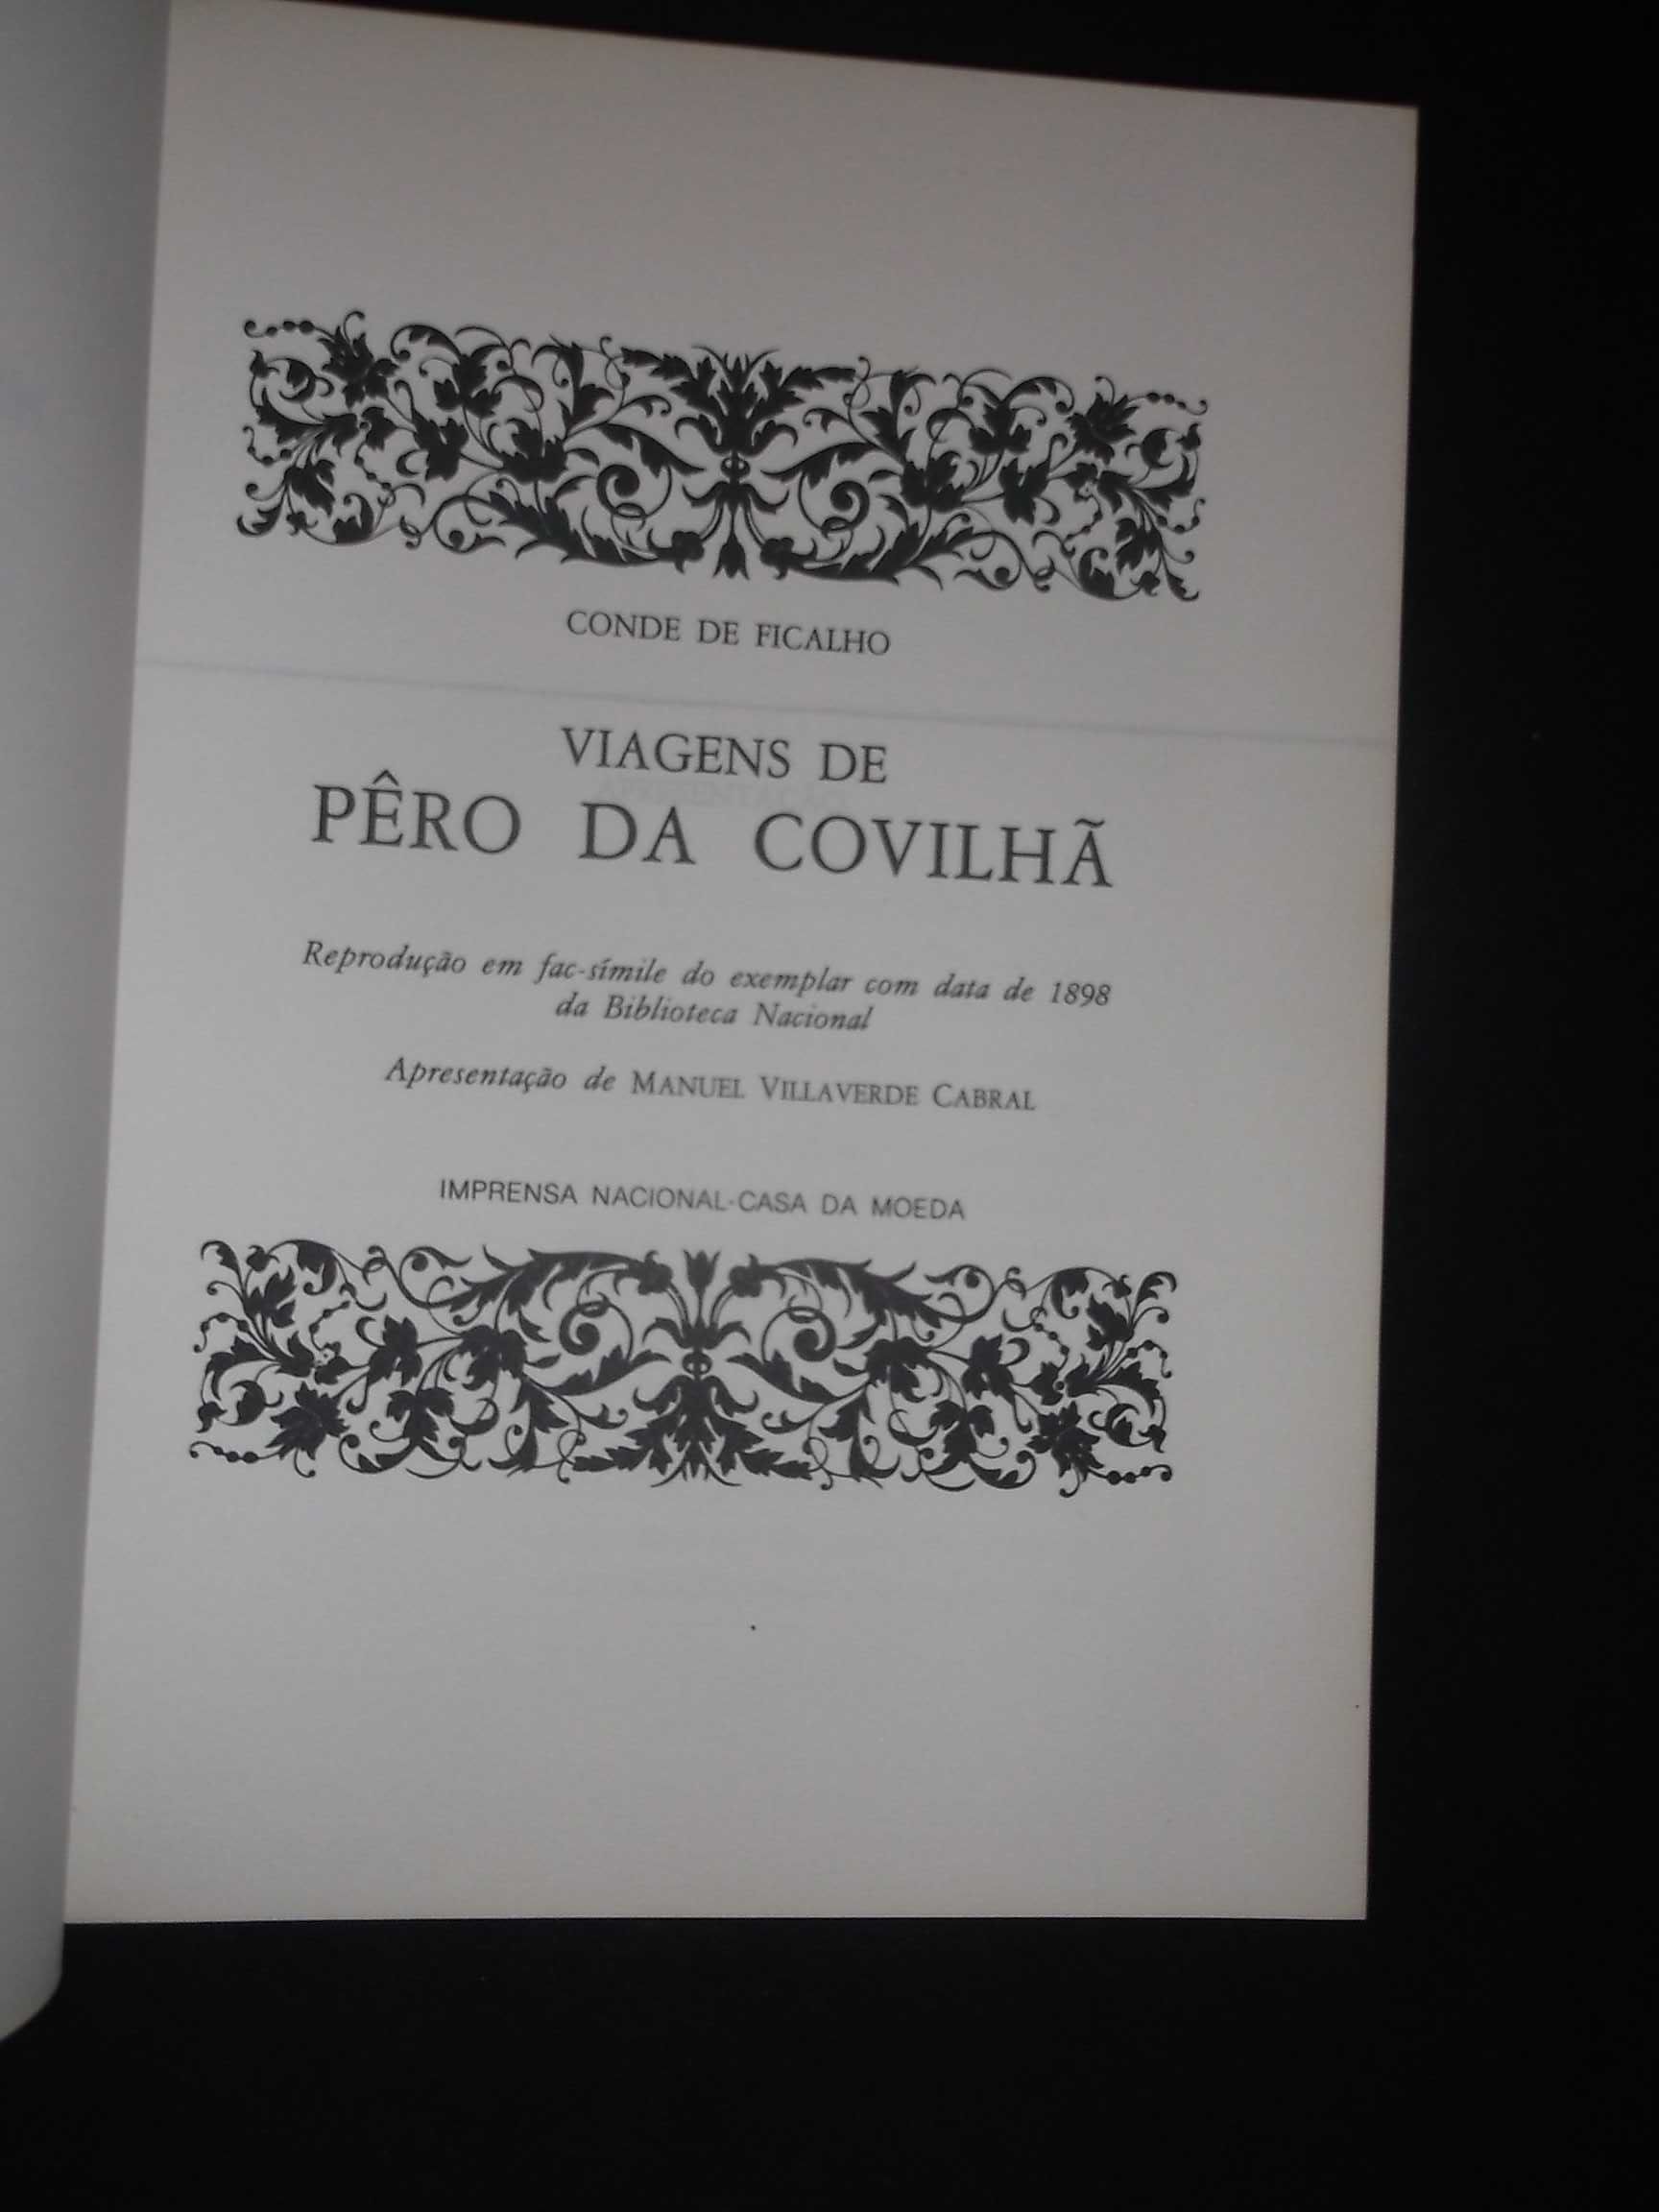 Conde de Ficalho);Viagens de Pêro da Covilhã